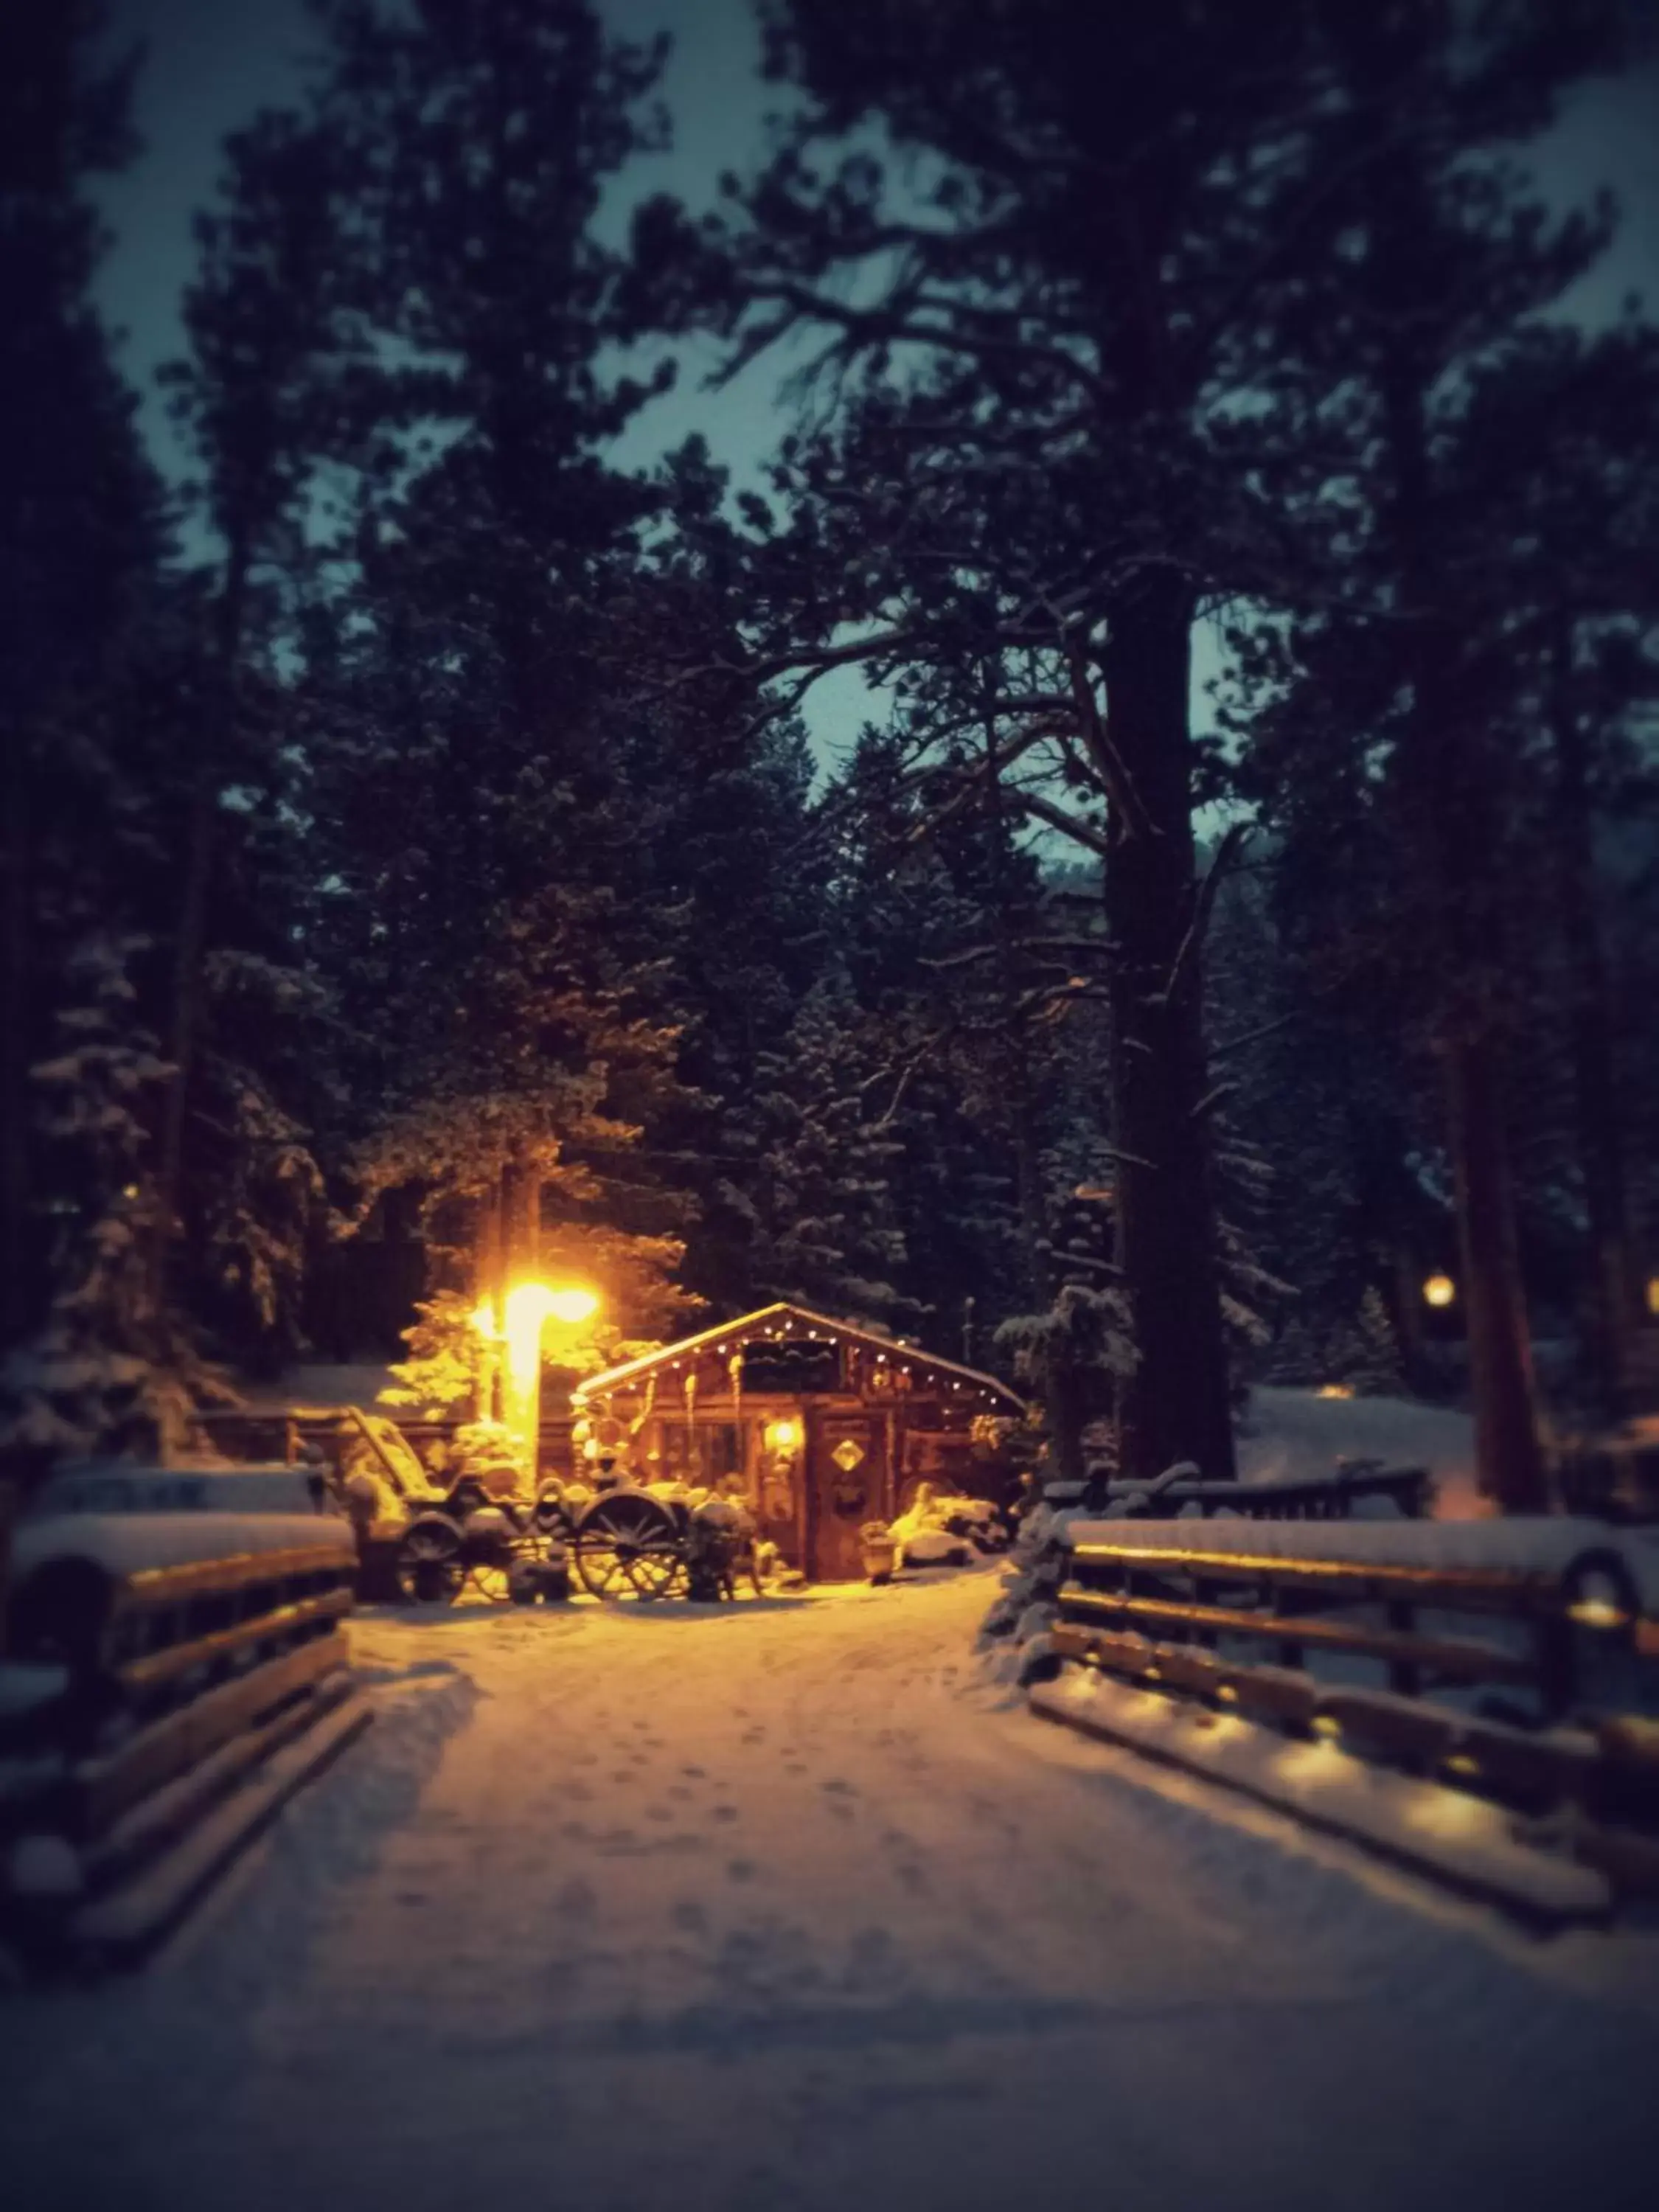 Winter in Pine Haven Resort